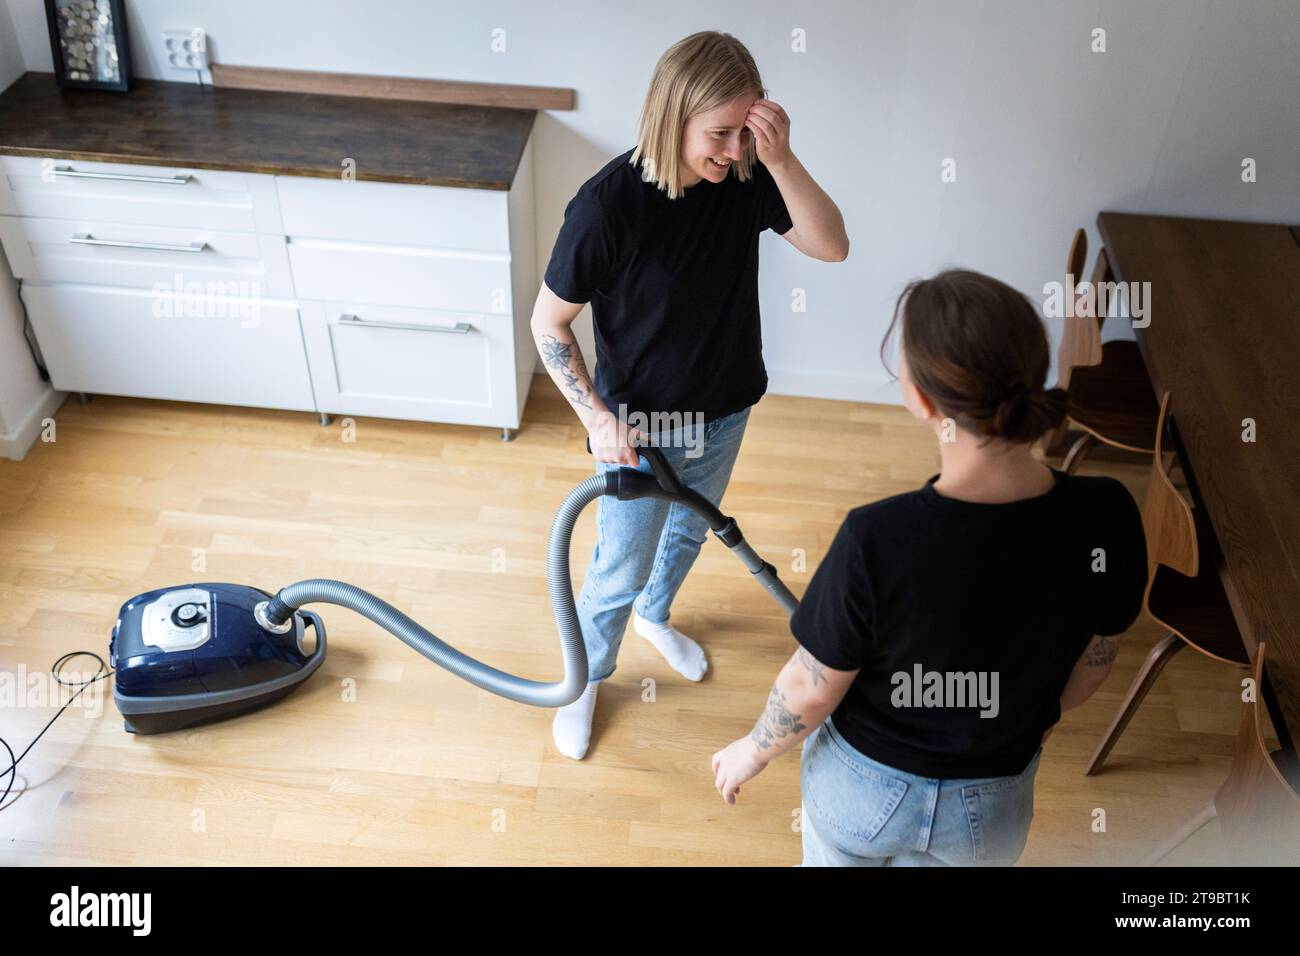 Hochwinkelansicht einer jungen lesbischen Frau, die mit ihrer Freundin spricht, während sie zu Hause mit einem Staubsauger steht Stockfoto